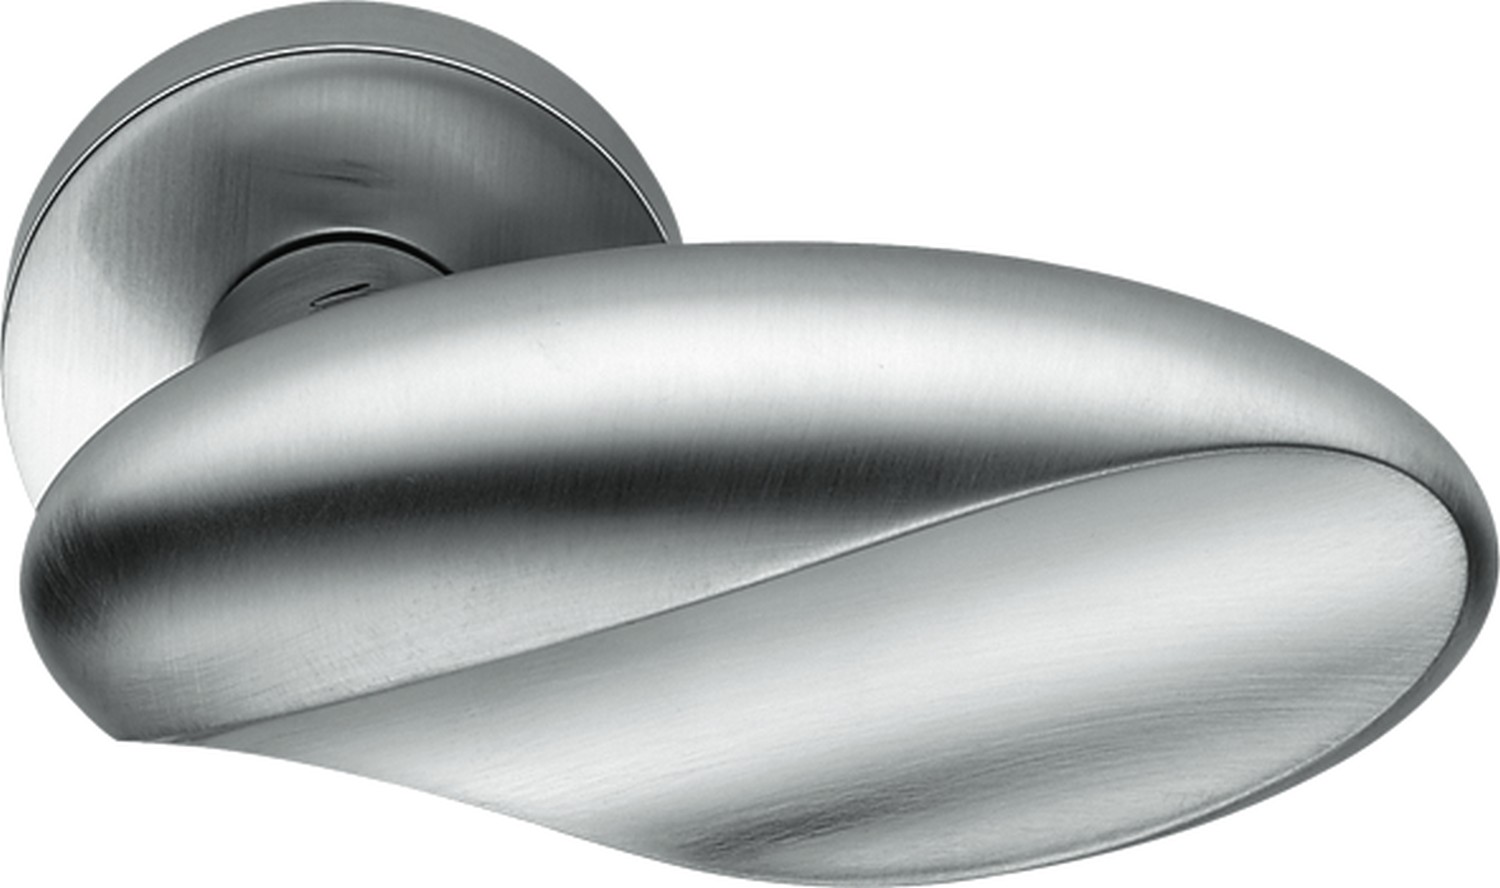 COLOMBO DESIGN -  Pomolo MOON ovale con quadro rosette e bocchette tonde foro yale - mat. OTTONE - col. CROMO MAT - SATINATO - dim. Ø50